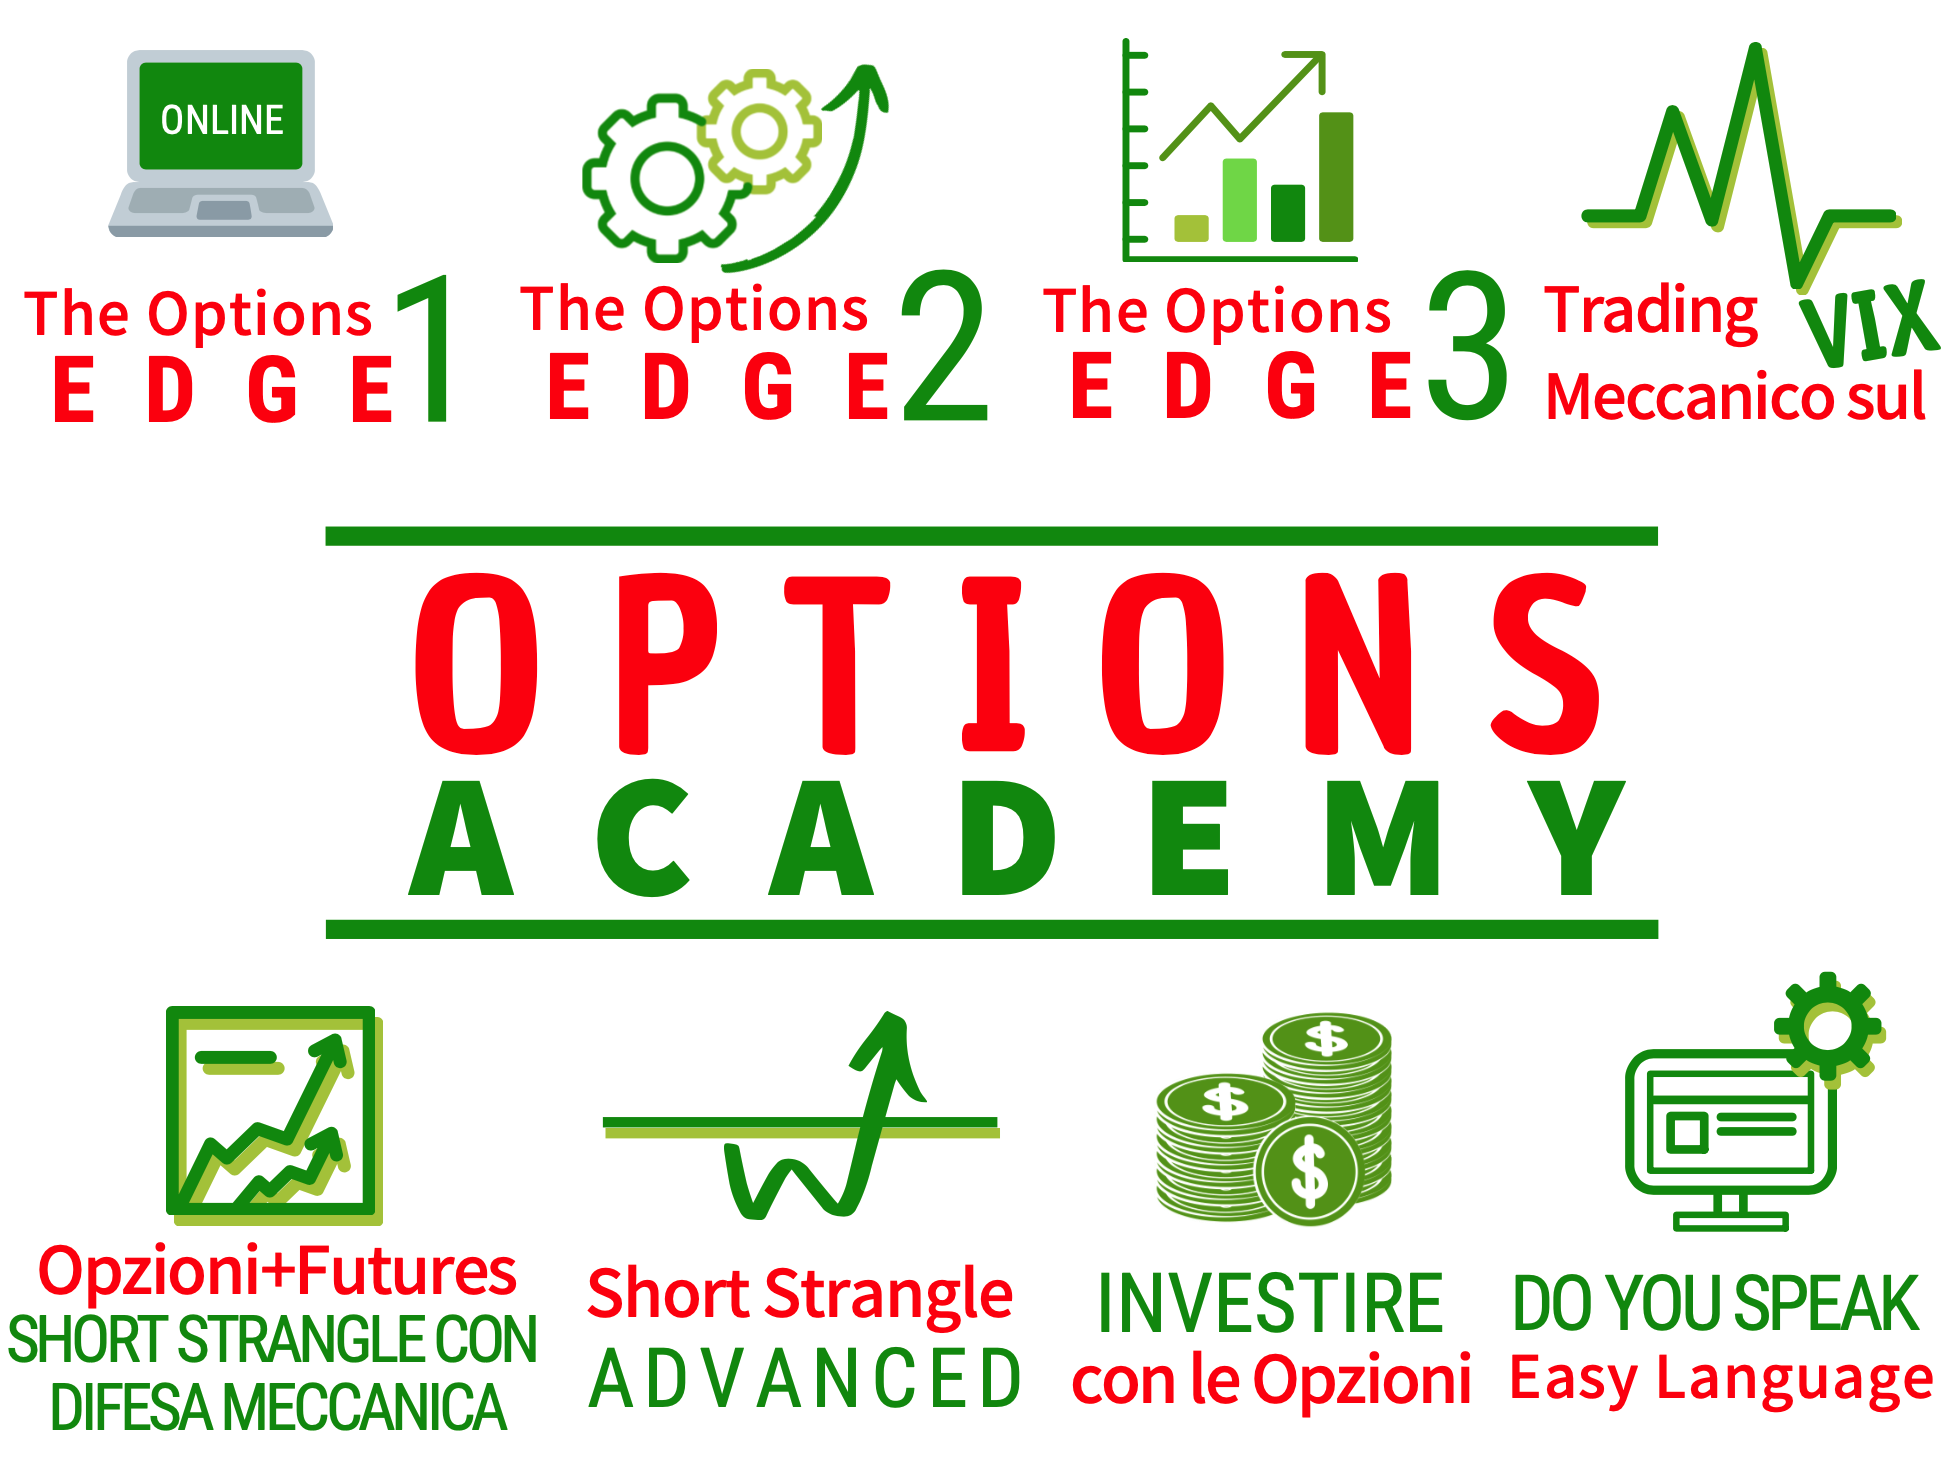 qtlab corsi trading Options Academy, corso trading qtlab